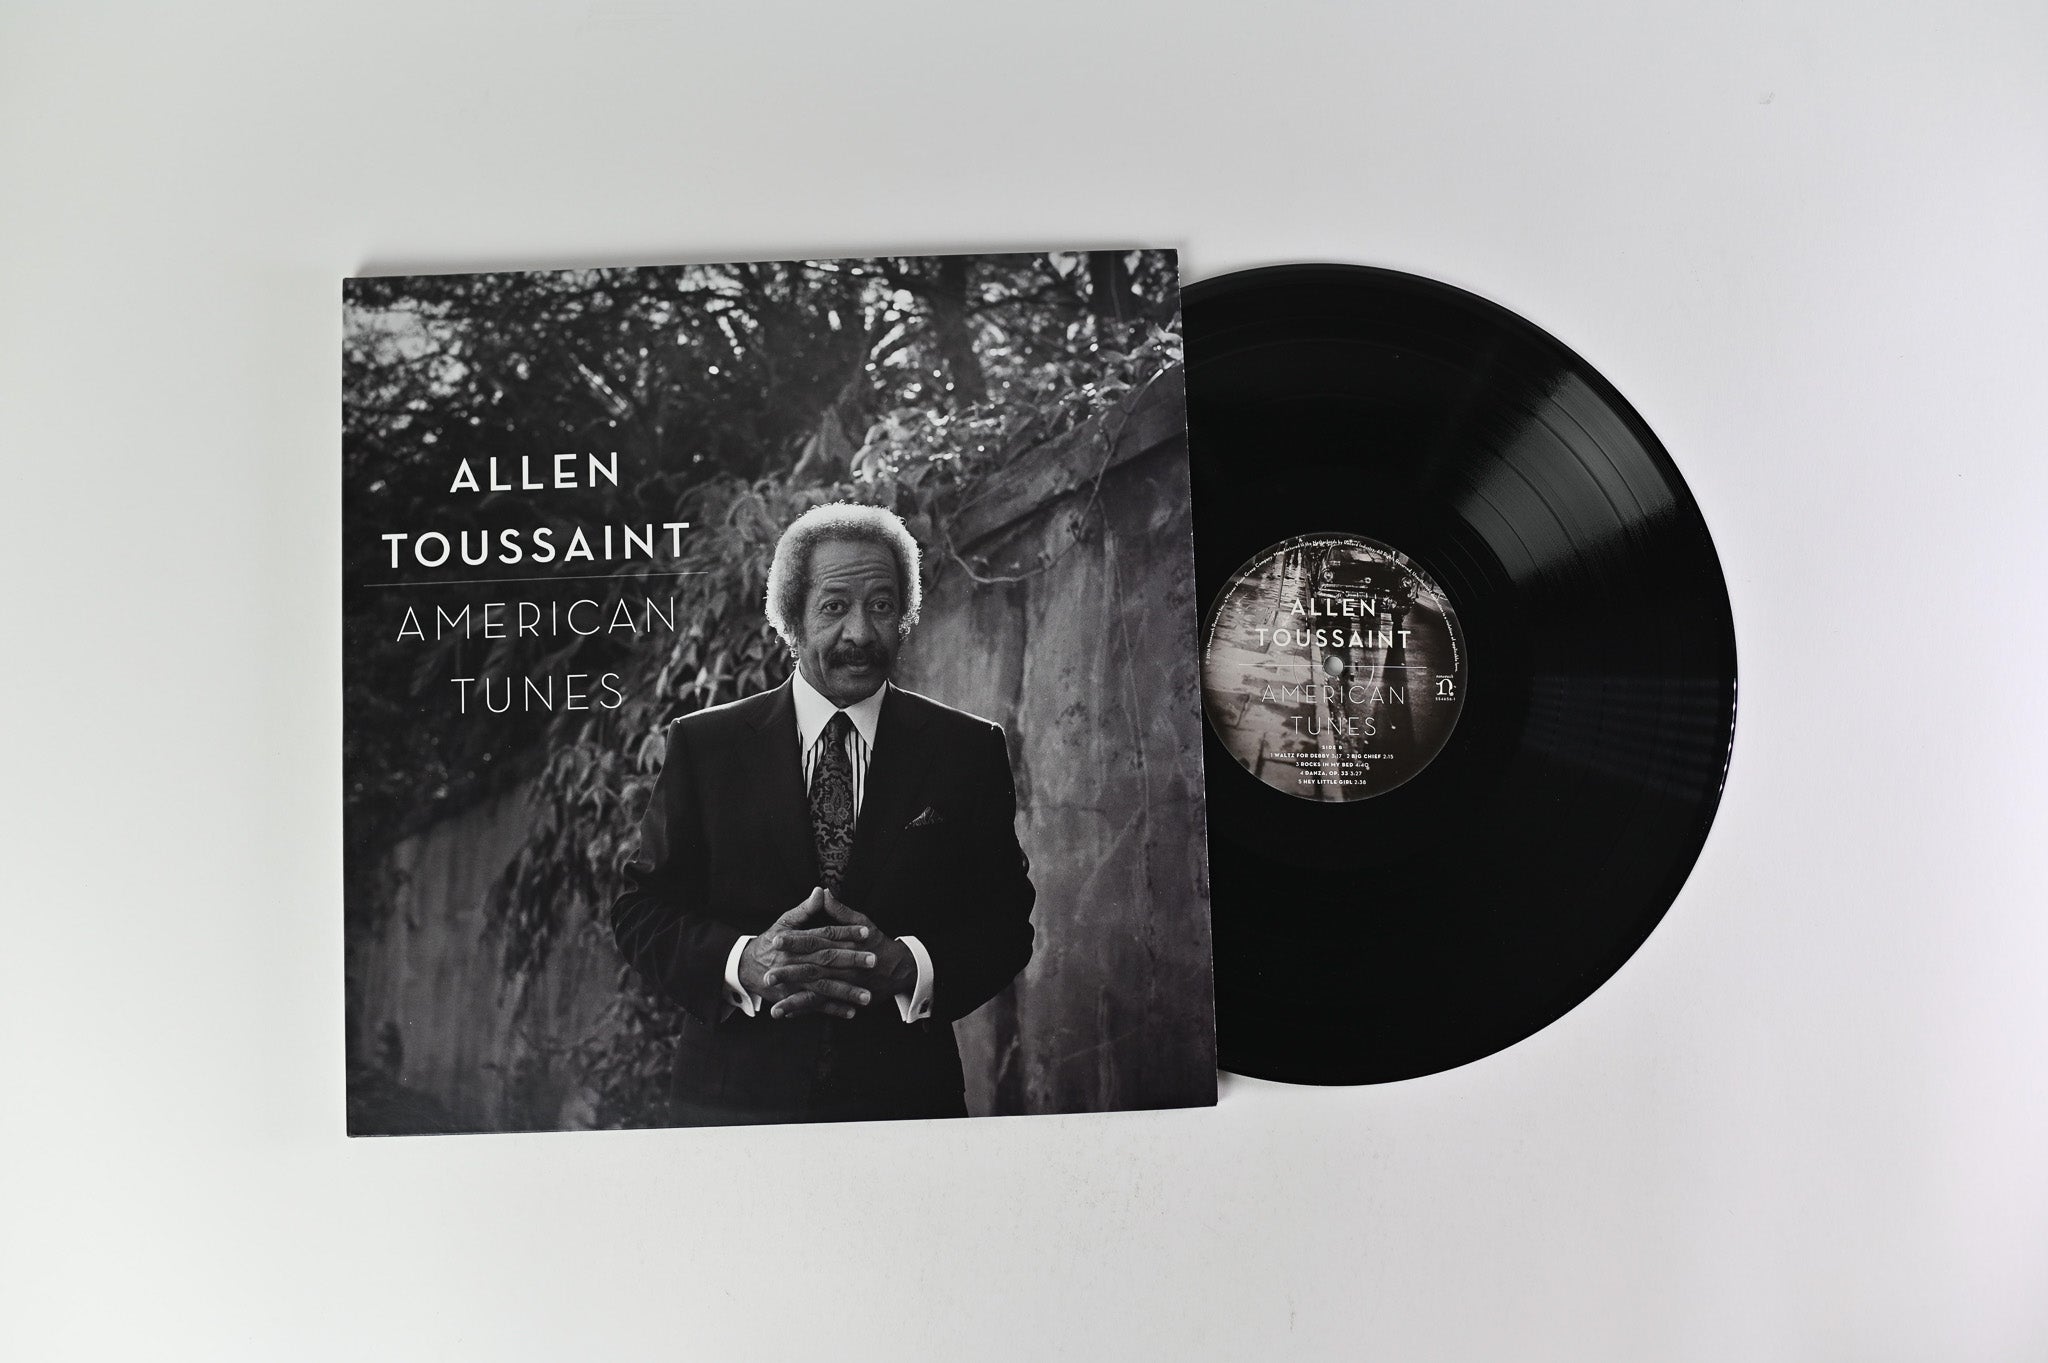 Allen Toussaint - American Tunes on Nonesuch